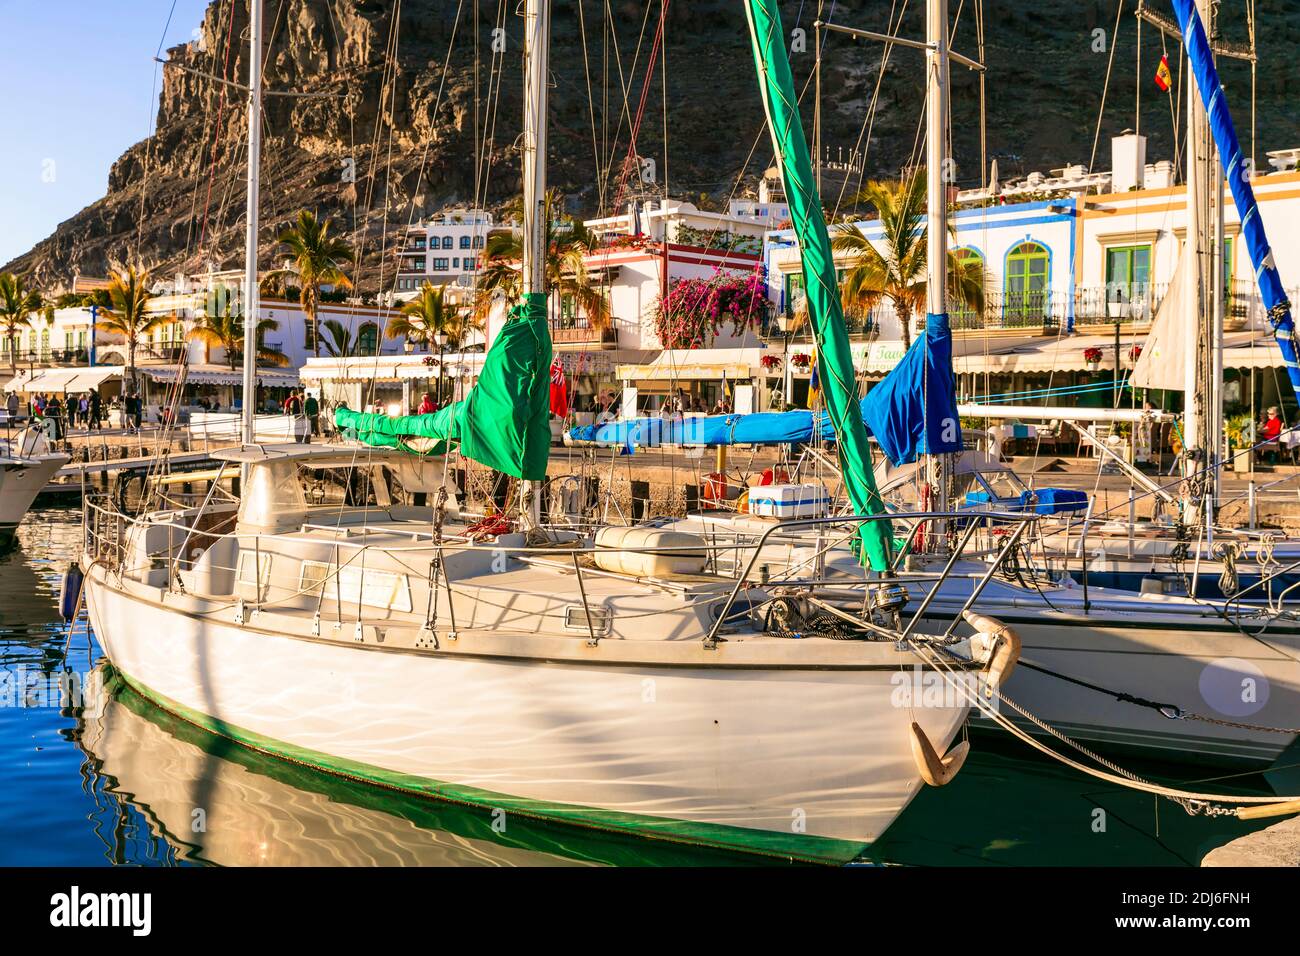 Gran Canaria (Grand Canary). Pittoresque ville de Puerto de Mogan. Vue avec bateaux à voile .célèbre destination touristique. Îles Canaries. janvier 2019 Banque D'Images